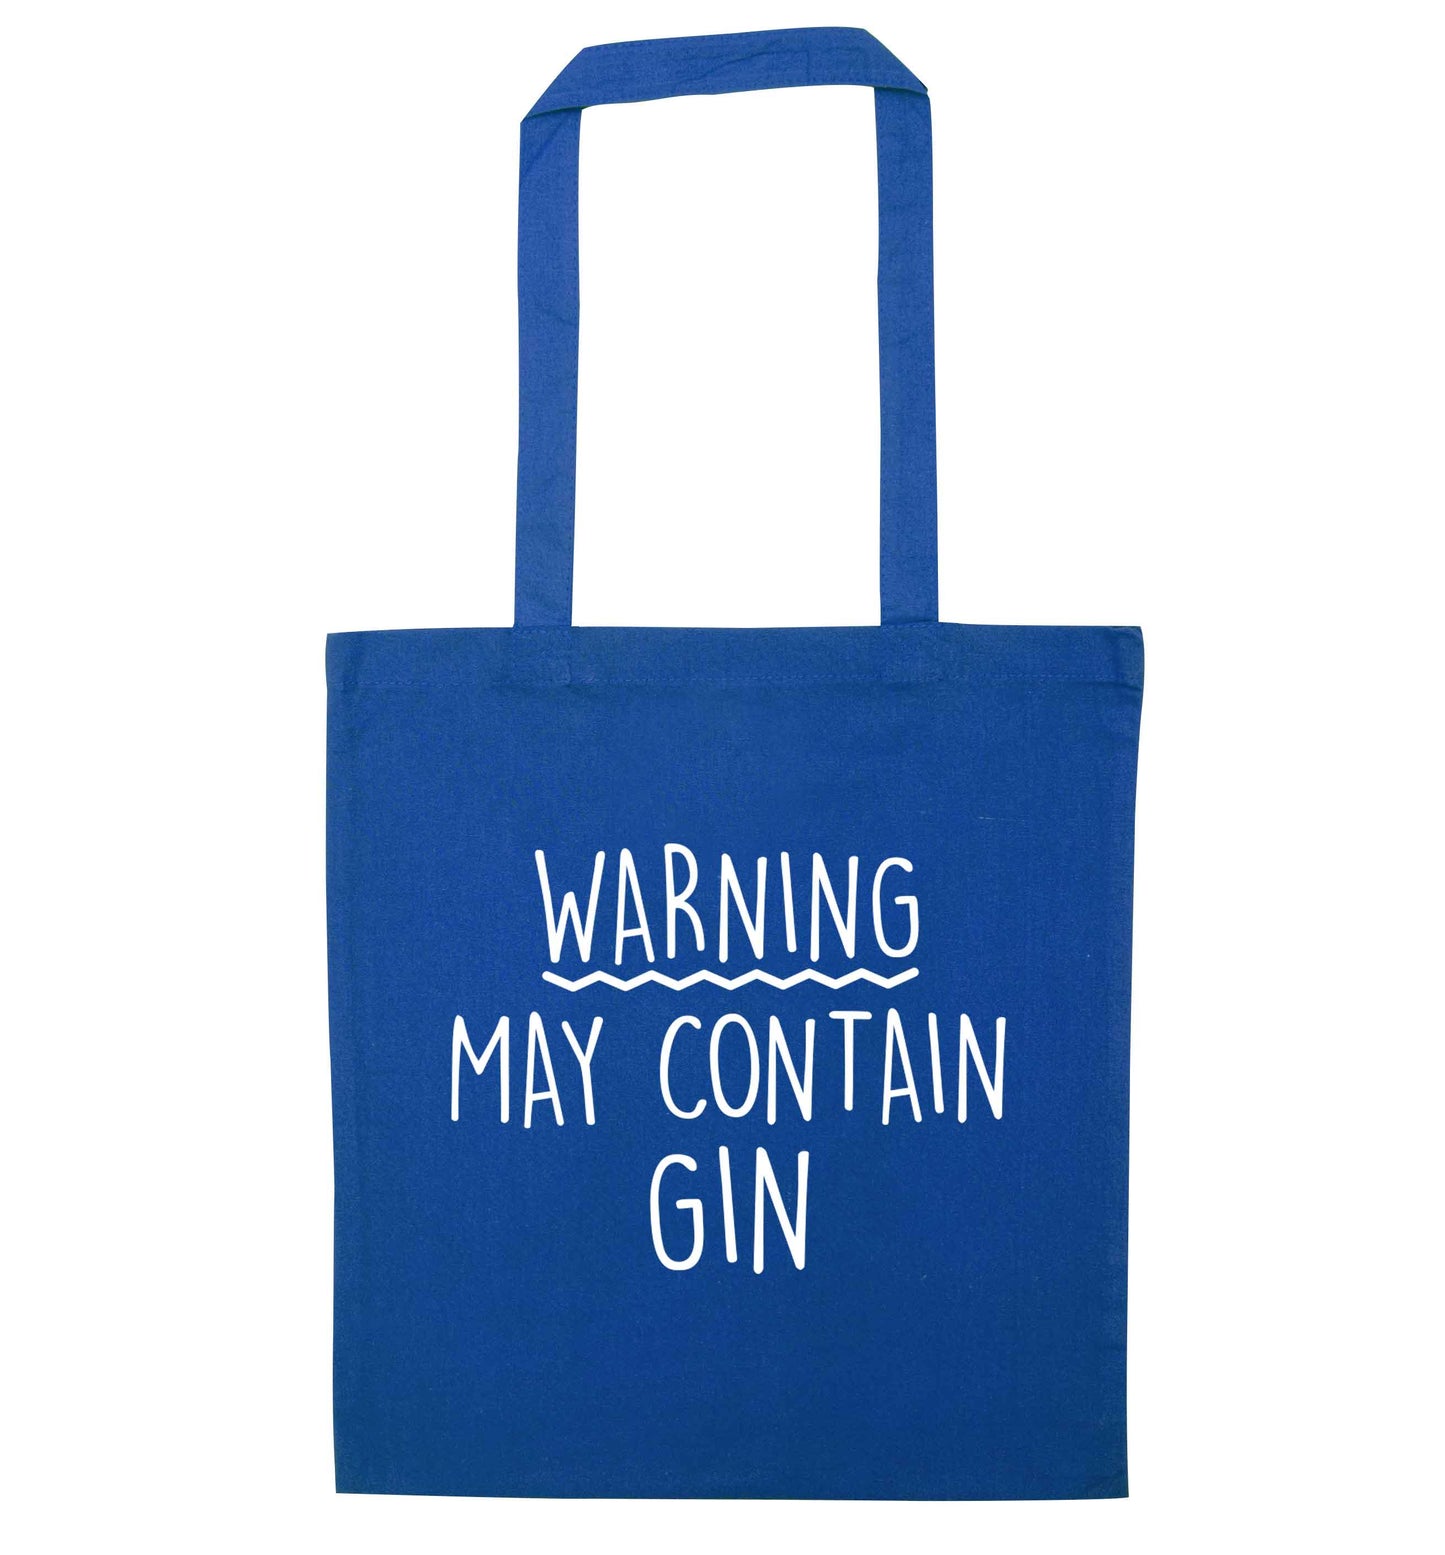 Warning may contain gin blue tote bag